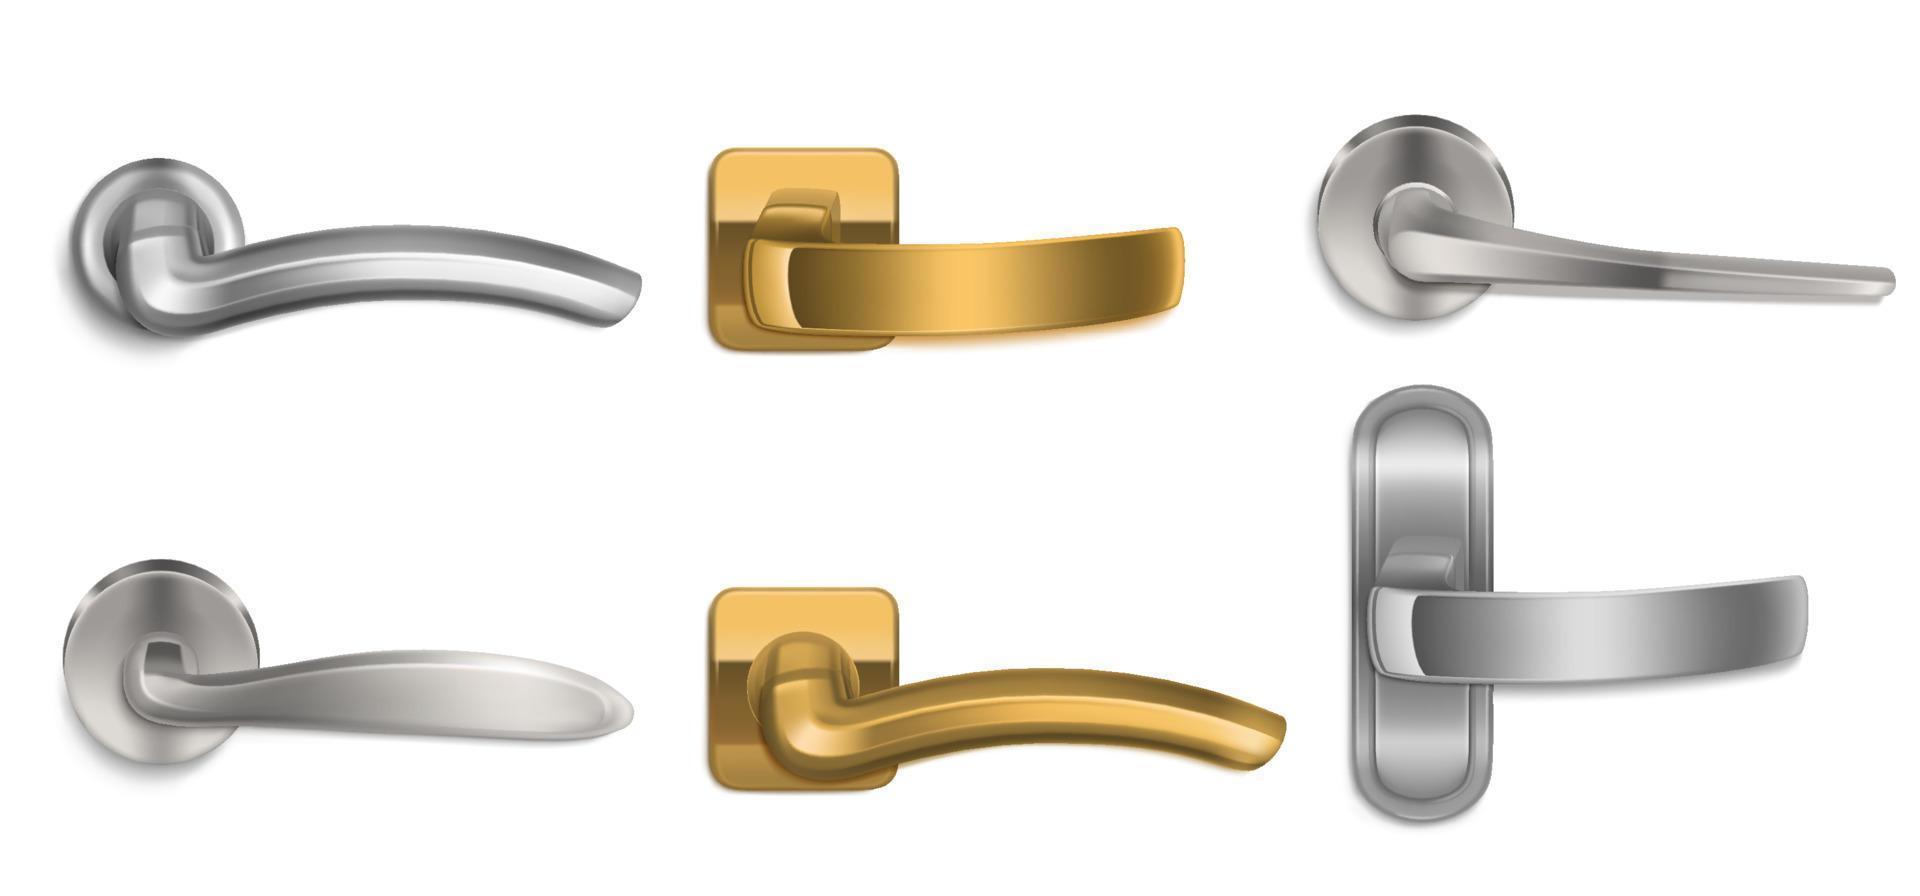 Realistic door handles golden and silver knobs set vector